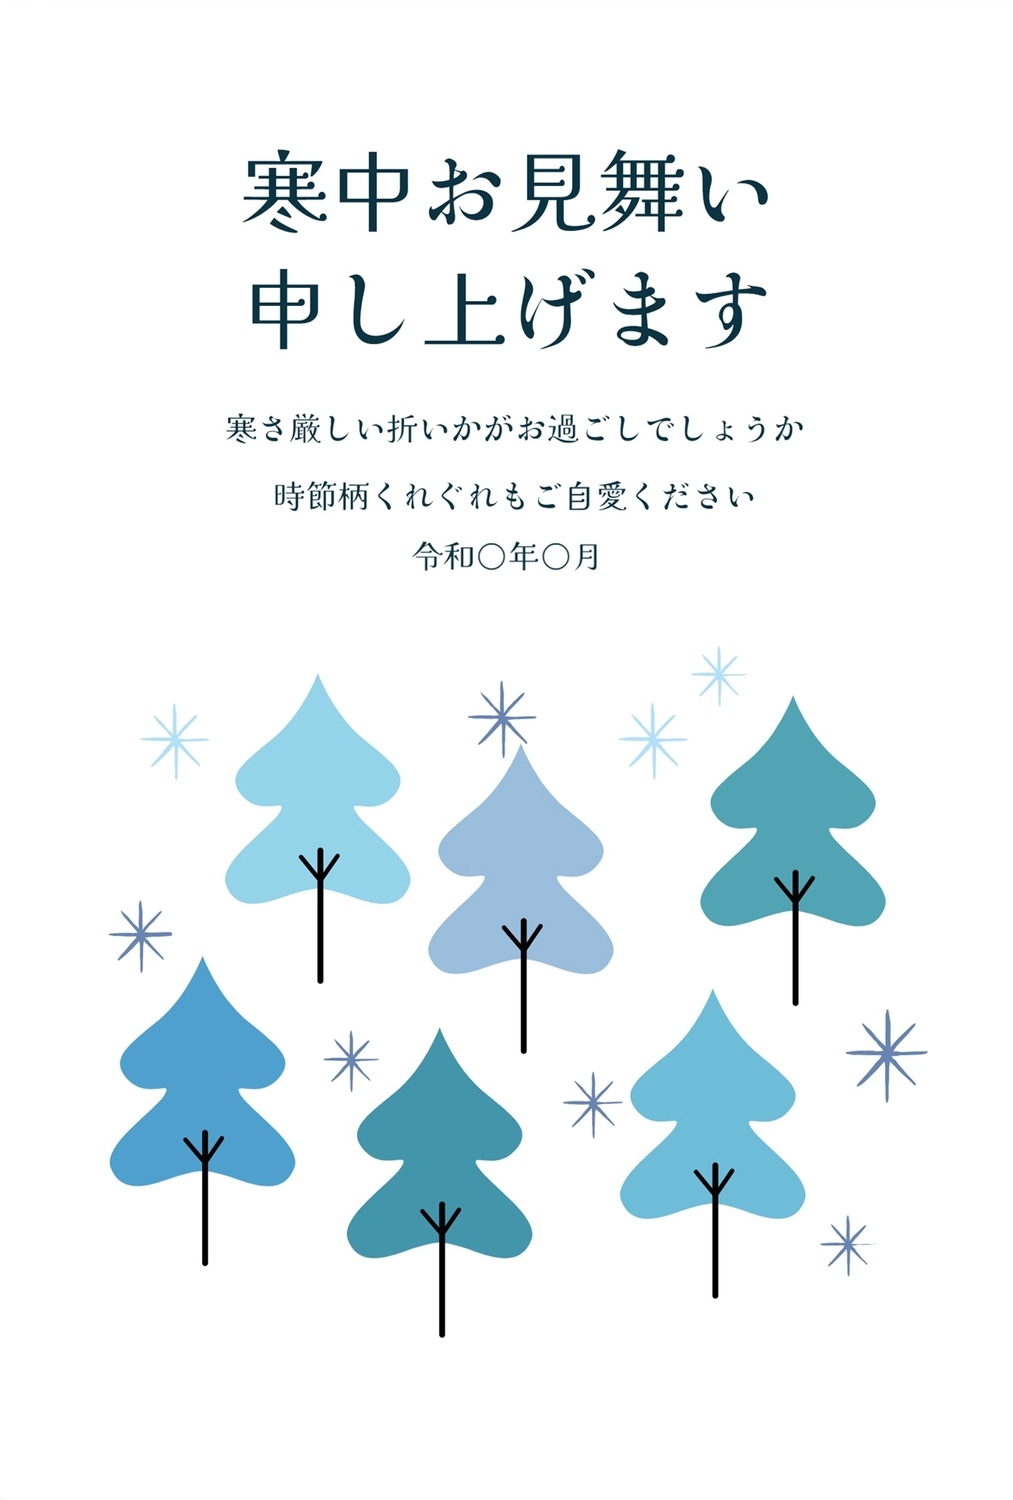 寒中見舞い　林, January, February, greeting card, Mid-winter Greeting template